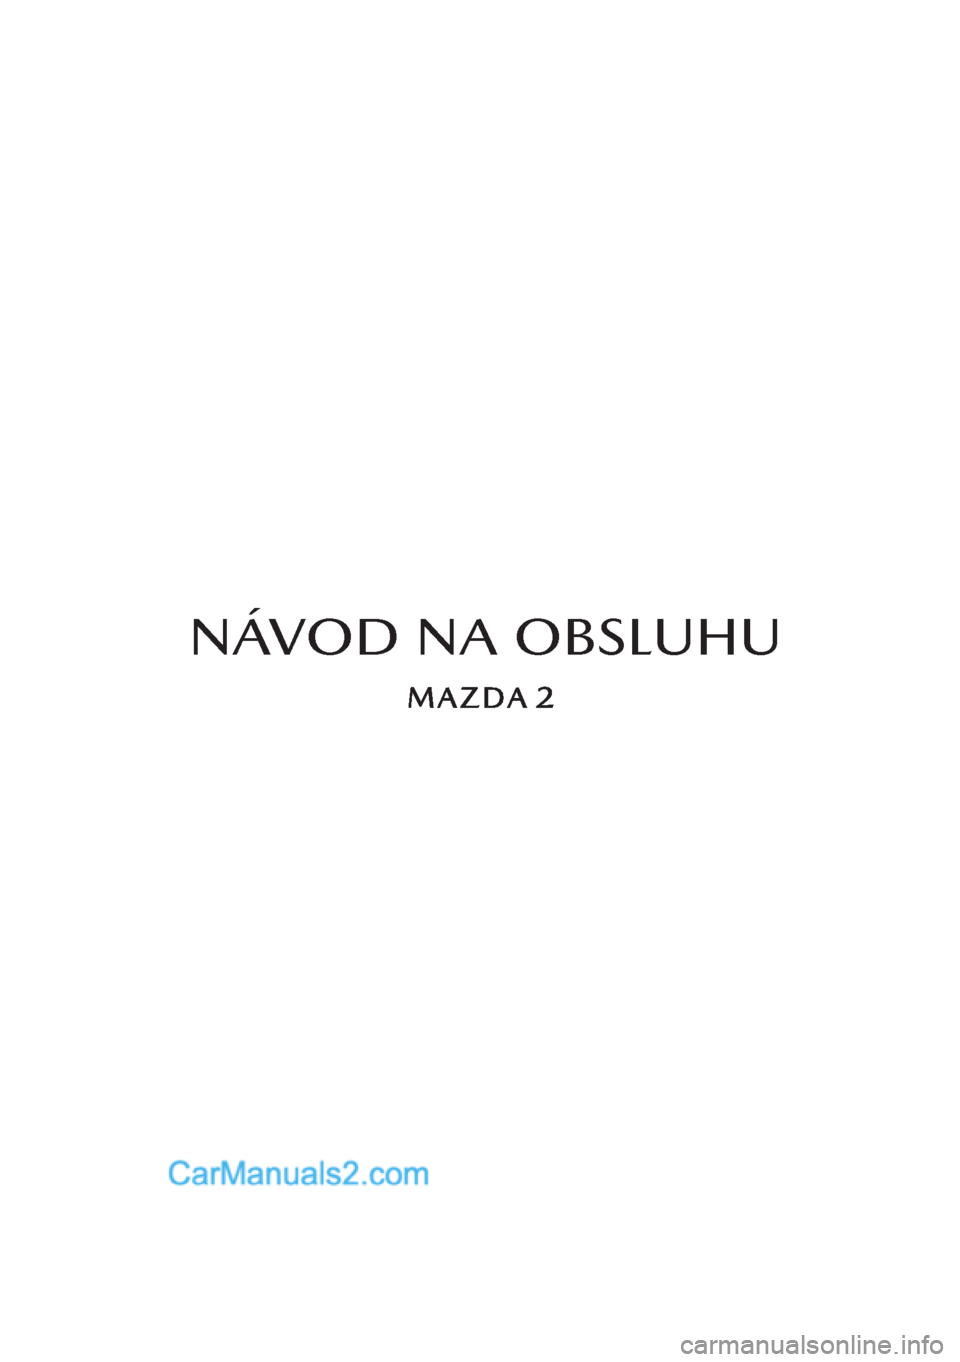 MAZDA MODEL 2 2019  Užívateľská príručka (in Slovak) NÁVOD NA OBSLUHU  